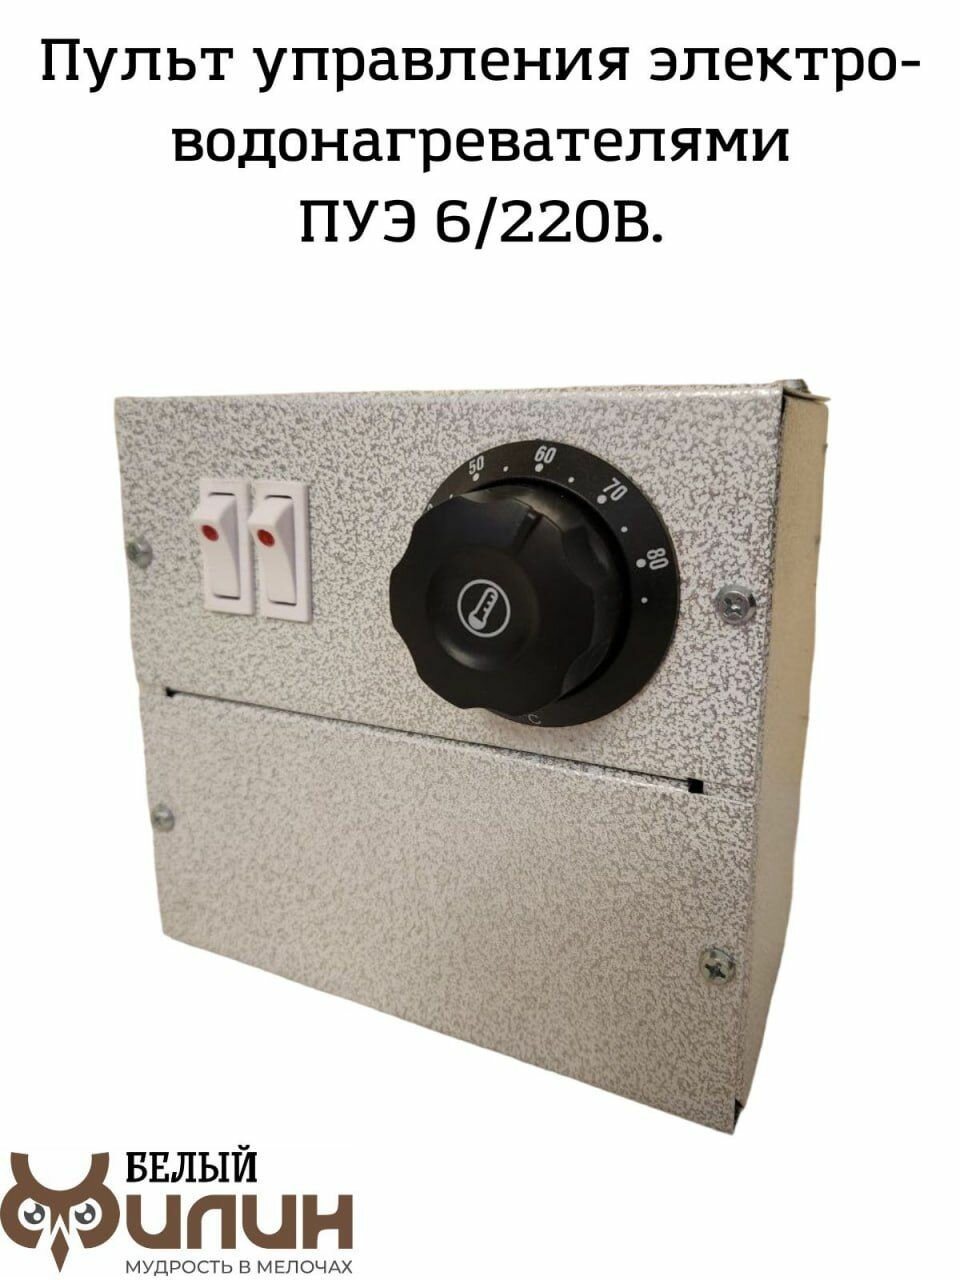 Пульт управления электроводонагревателями блок автоматики для электрокотлов ПУЭ-6 220В